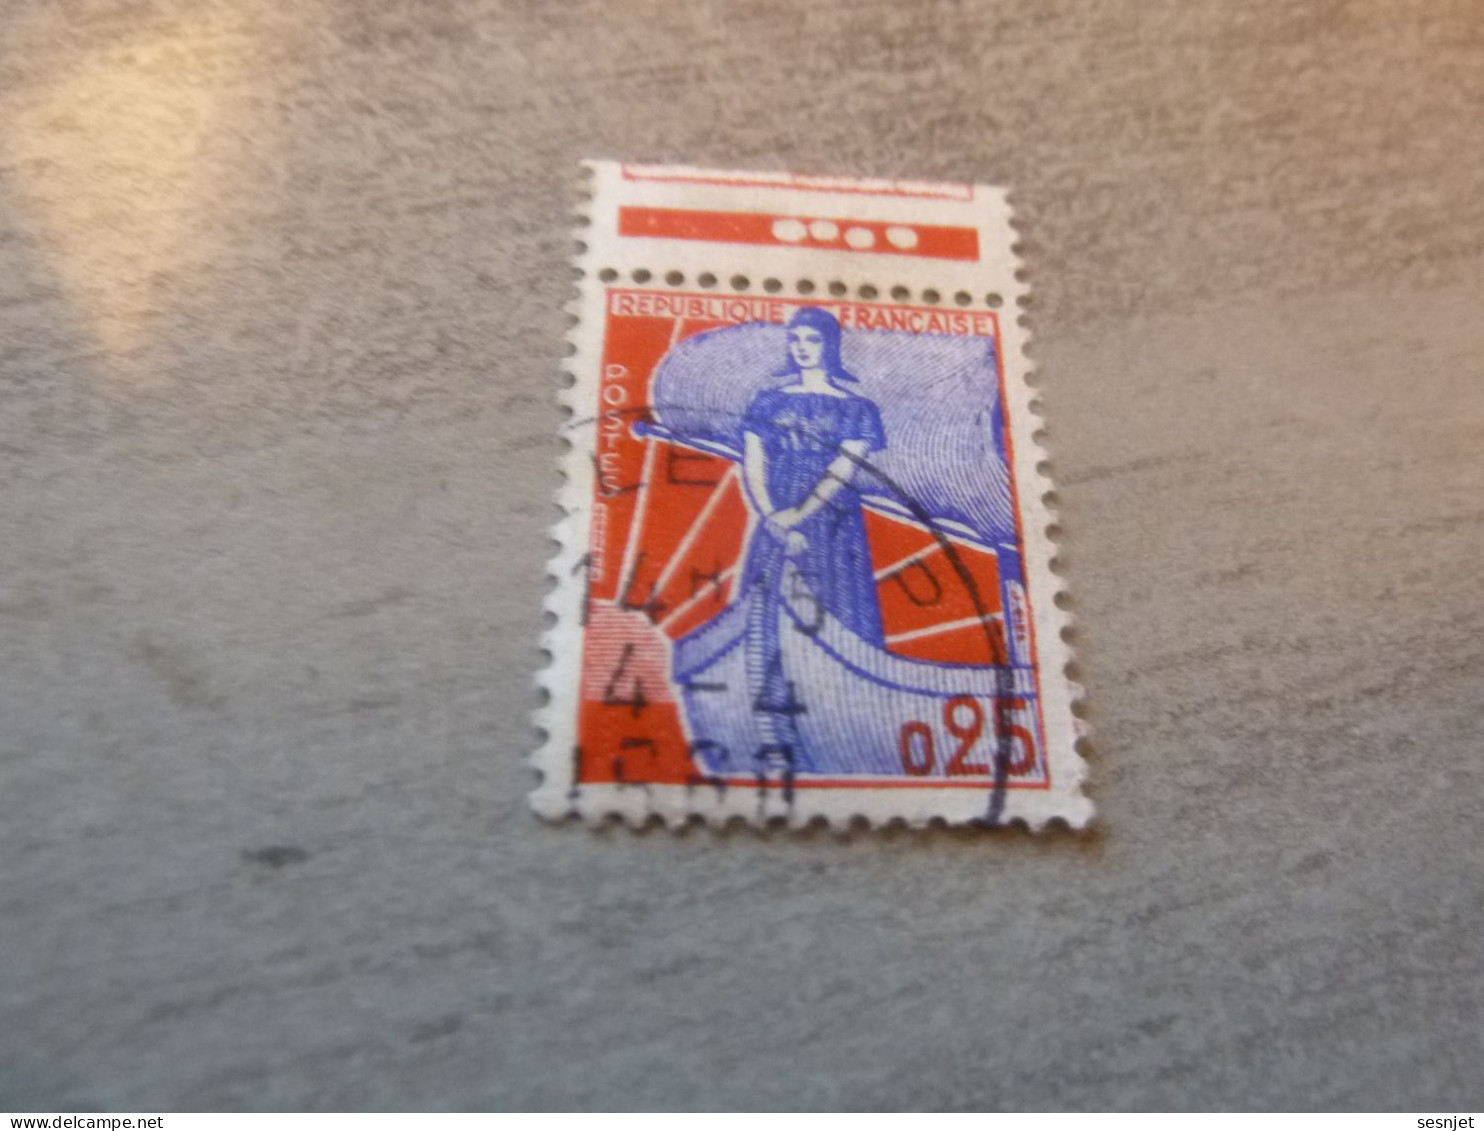 Marianne à La Nef - 25c. - Yt 1234 - Bleu Et Rouge - Bande Oblitéré  - Année 1960 - - 1959-1960 Marianne (am Bug)